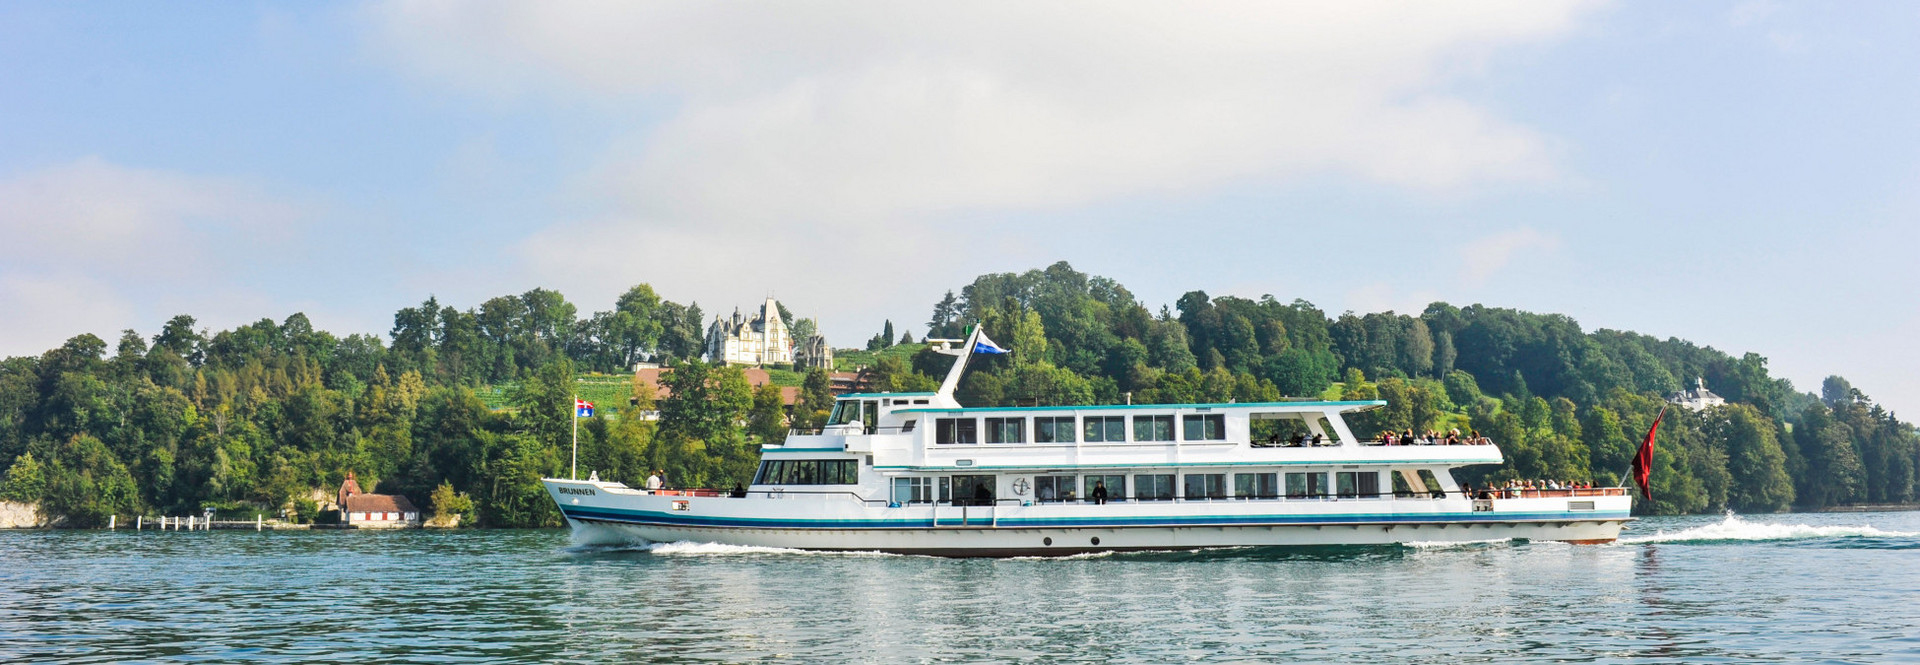 Le bateau à moteur Brunnen navigue sur le lac des Quatre-Cantons par temps ensoleillé.